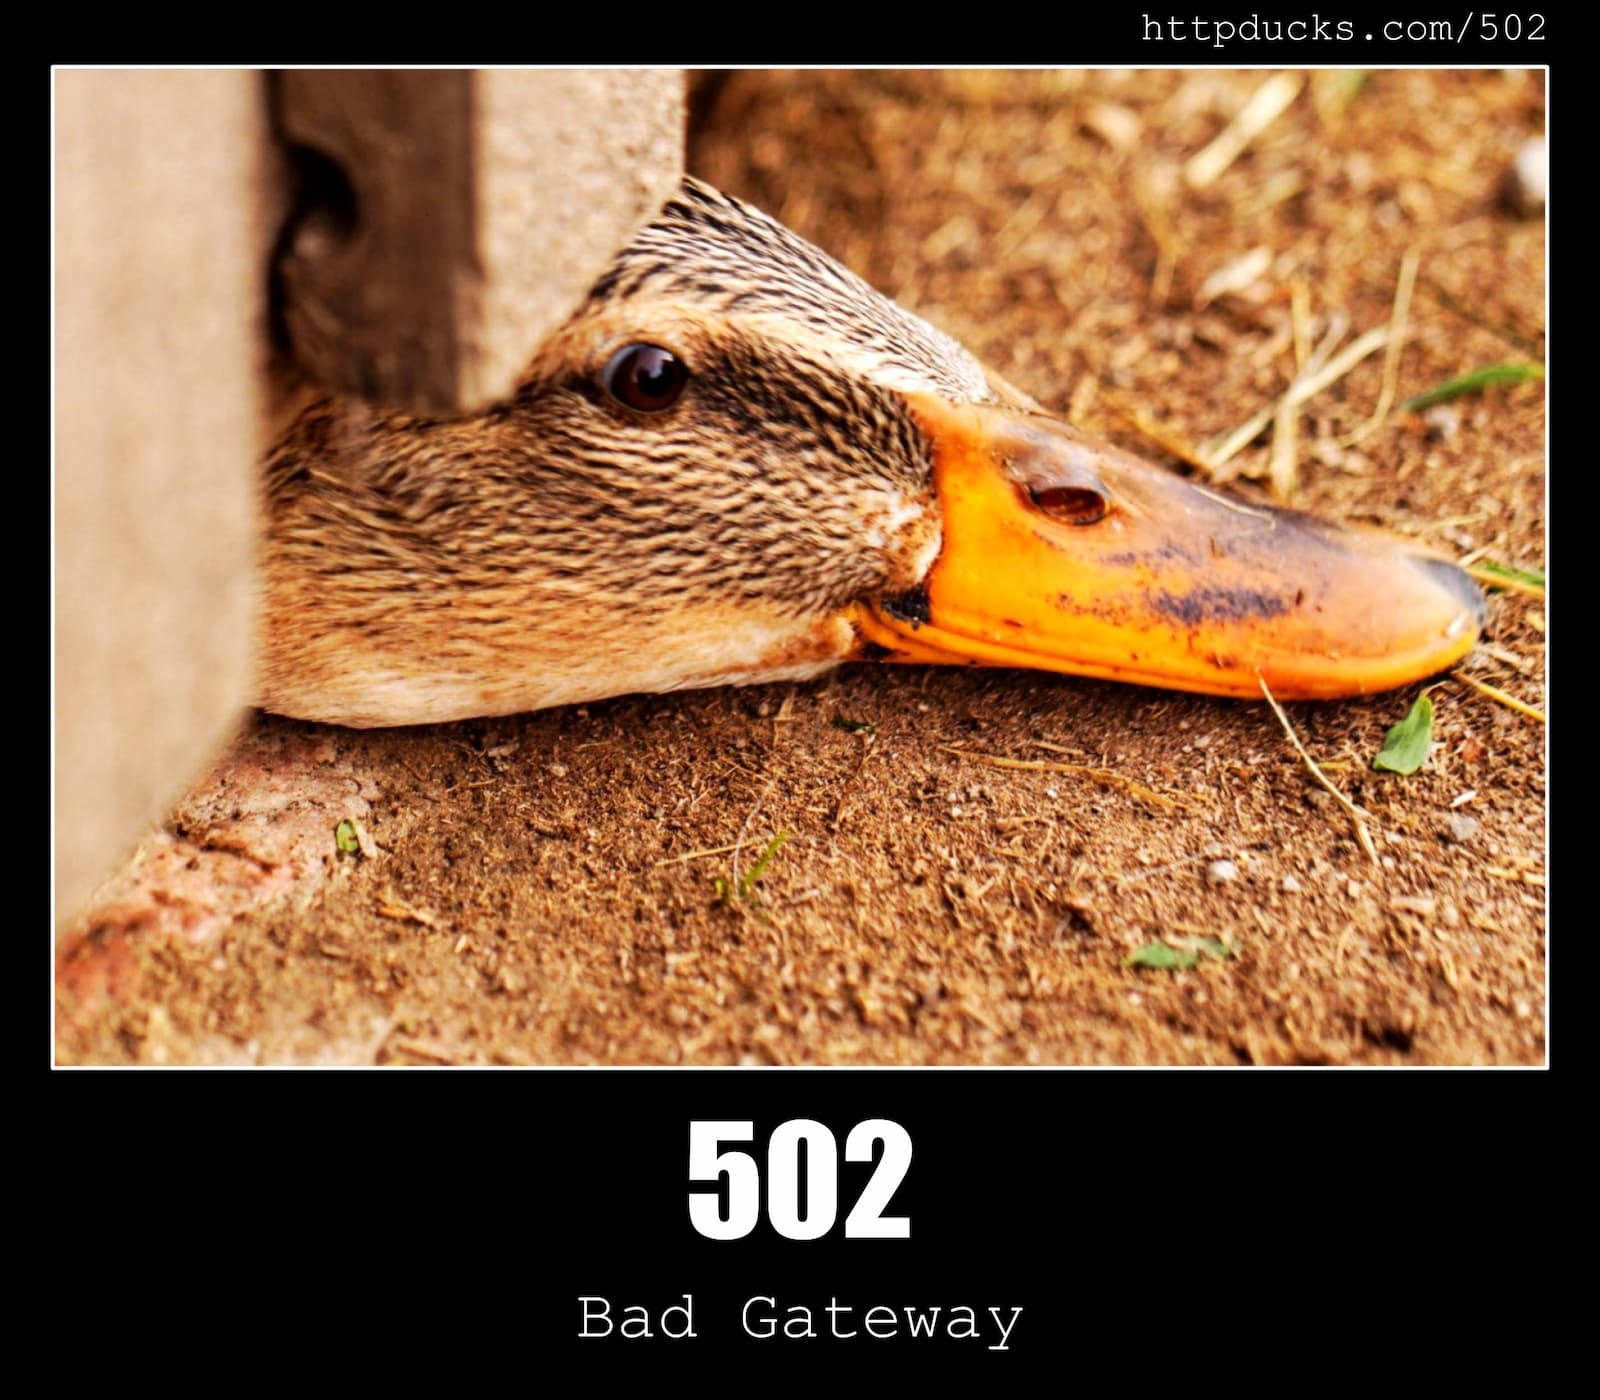 HTTP Status Code 502 Bad Gateway & Ducks